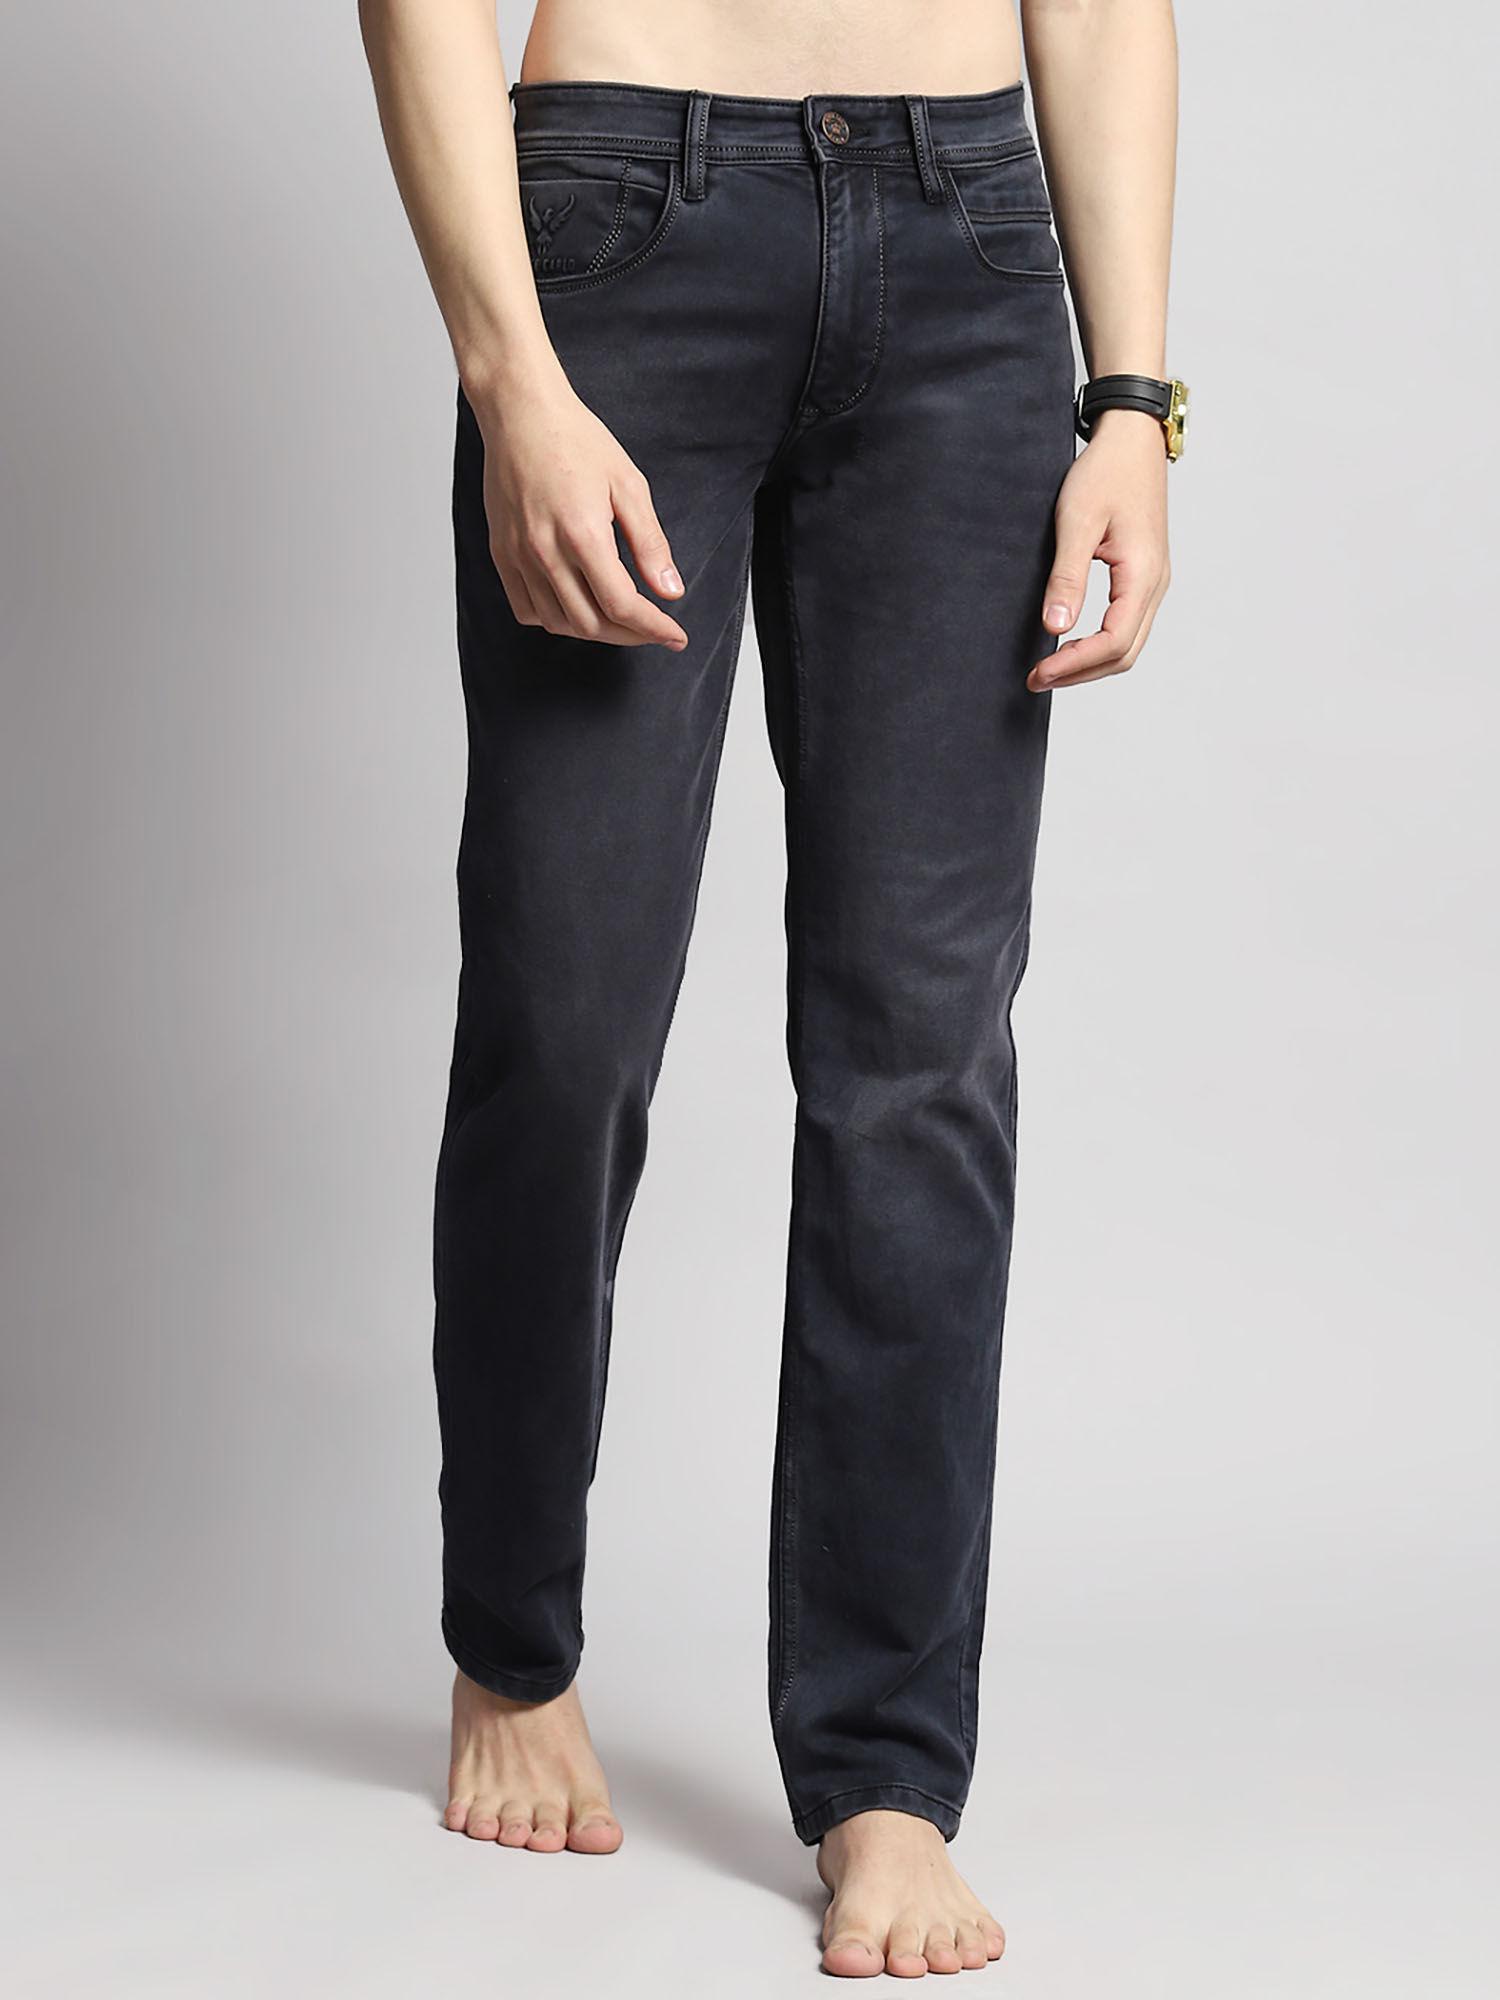 mens black plain wash cotton blend straight fit casual jeans